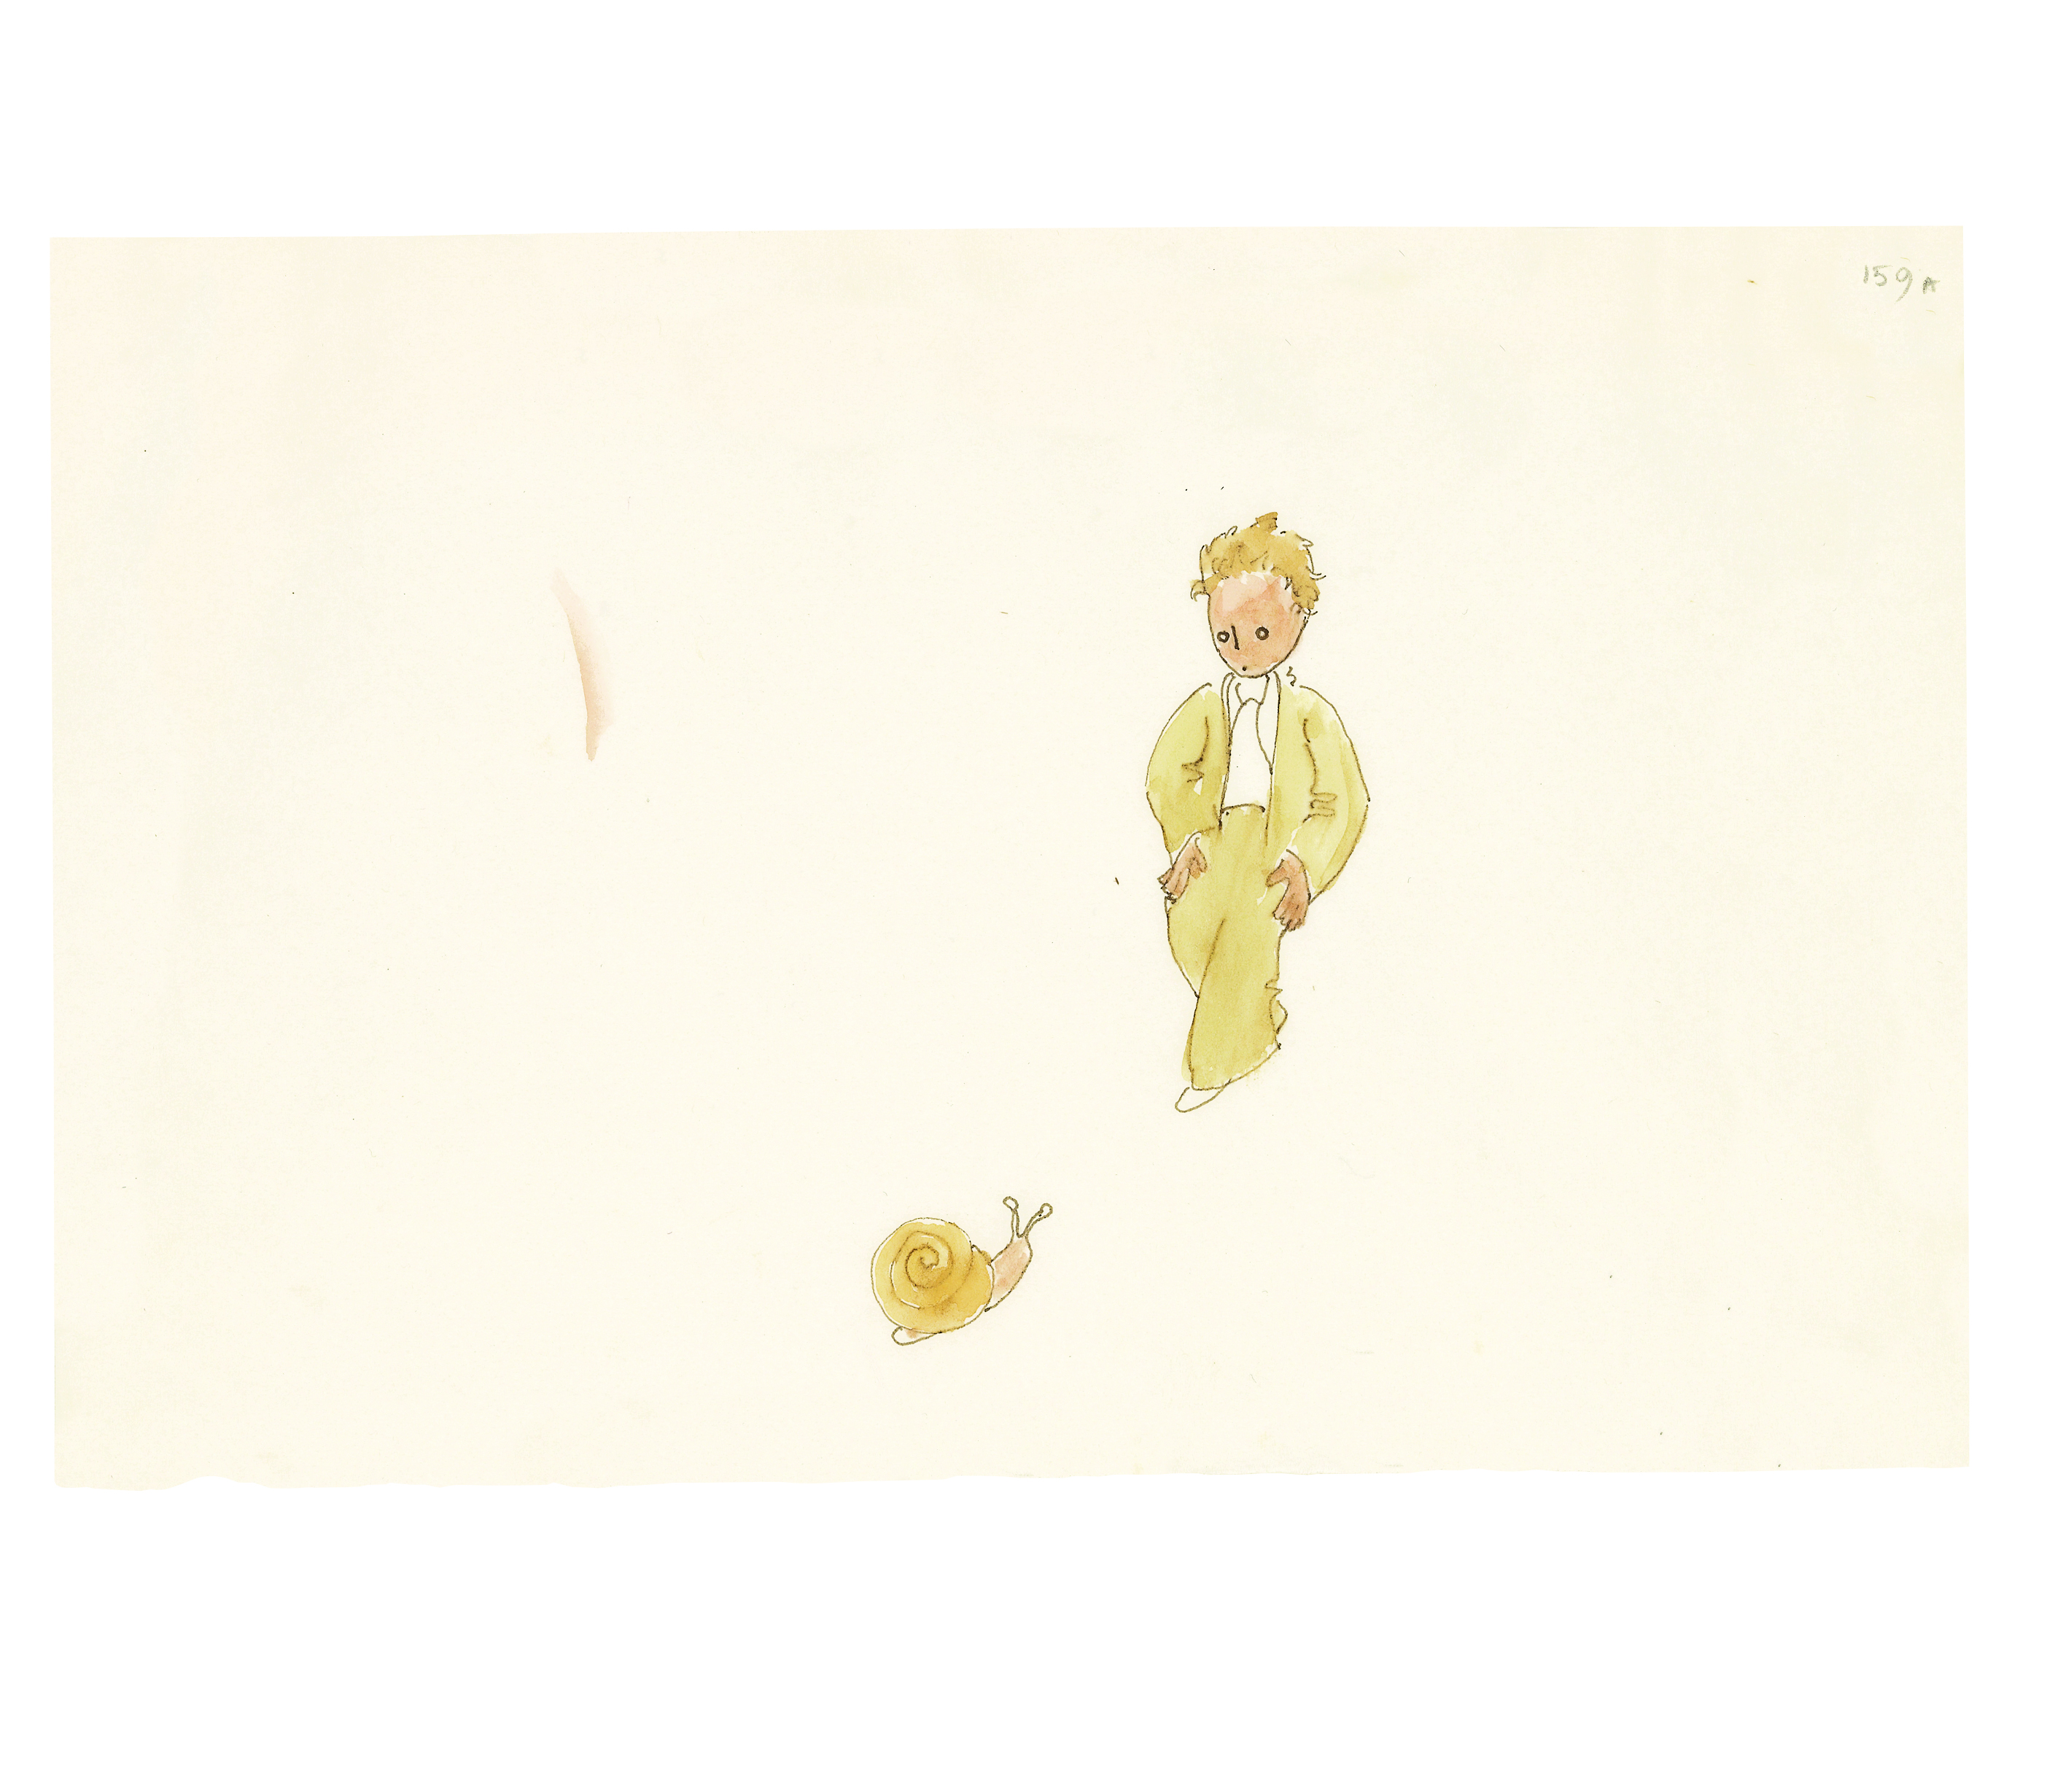 생텍쥐페리가 ‘어린 왕자’를 준비하면서 그린 ‘어린 왕자와 달팽이’(1942). 미국 뉴욕 모건도서관·박물관에 소장된 작품으로 ‘어린 왕자’ 출간 80주년을 맞아 공개됐다. 위즈덤하우스 제공